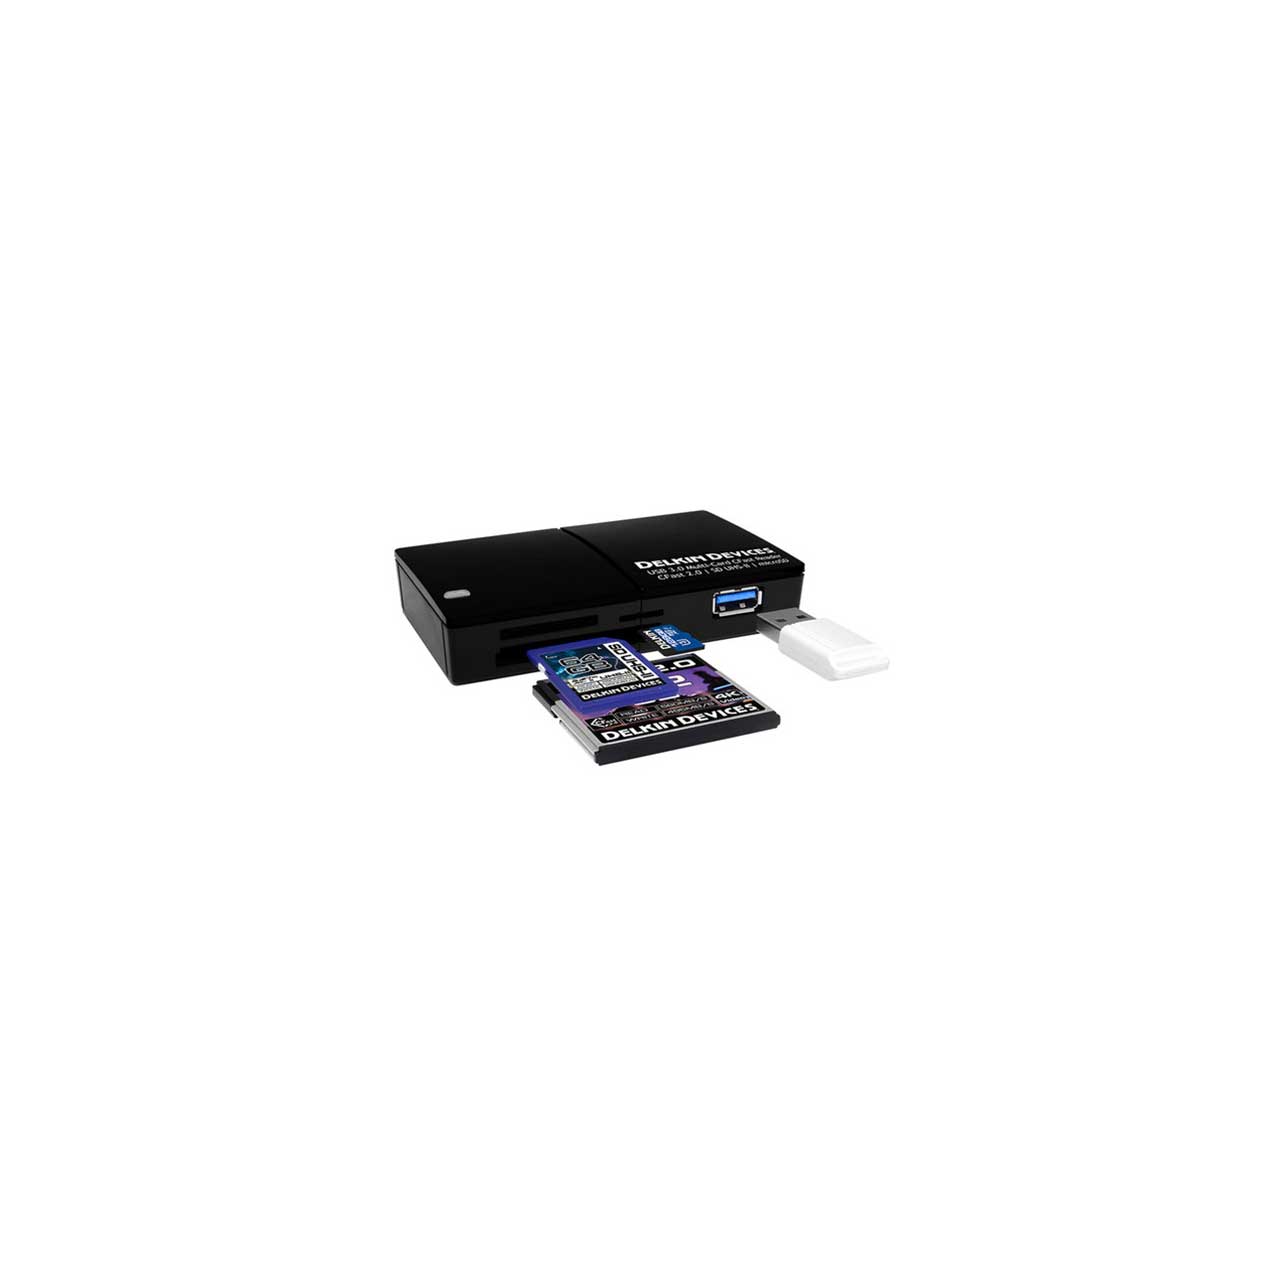 Delkin Black 64GB SDHC BLACK UHS-II (V90) (300/250) Memory Card